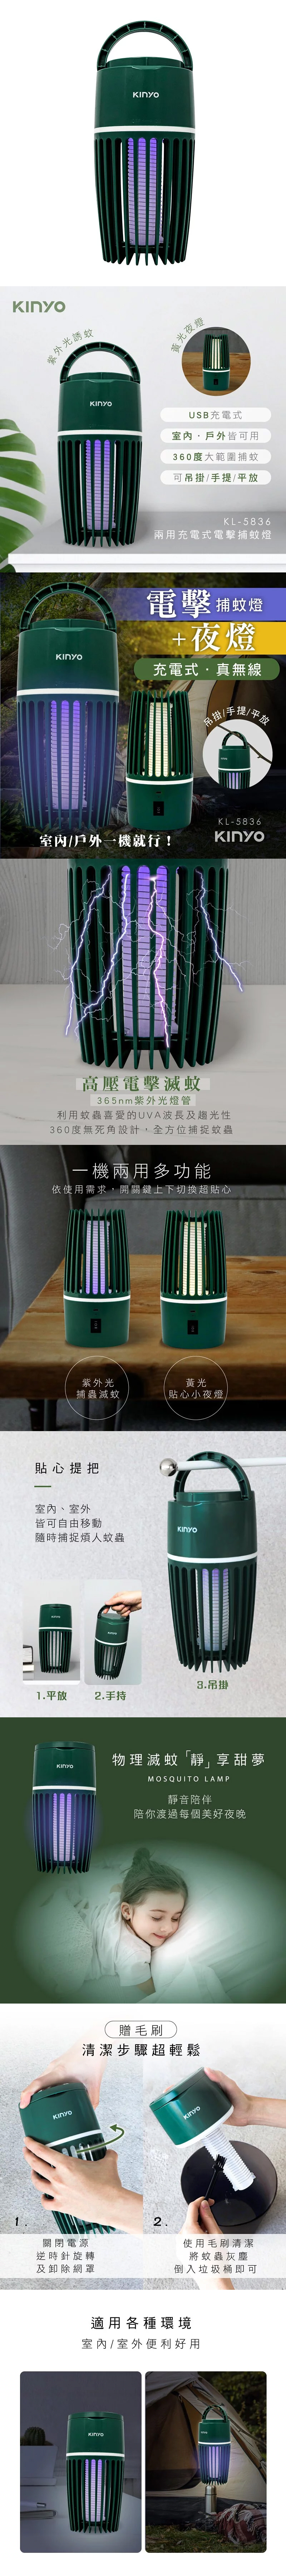 充電式 捕蚊燈 充電式 kinyo 兩用 kinyo